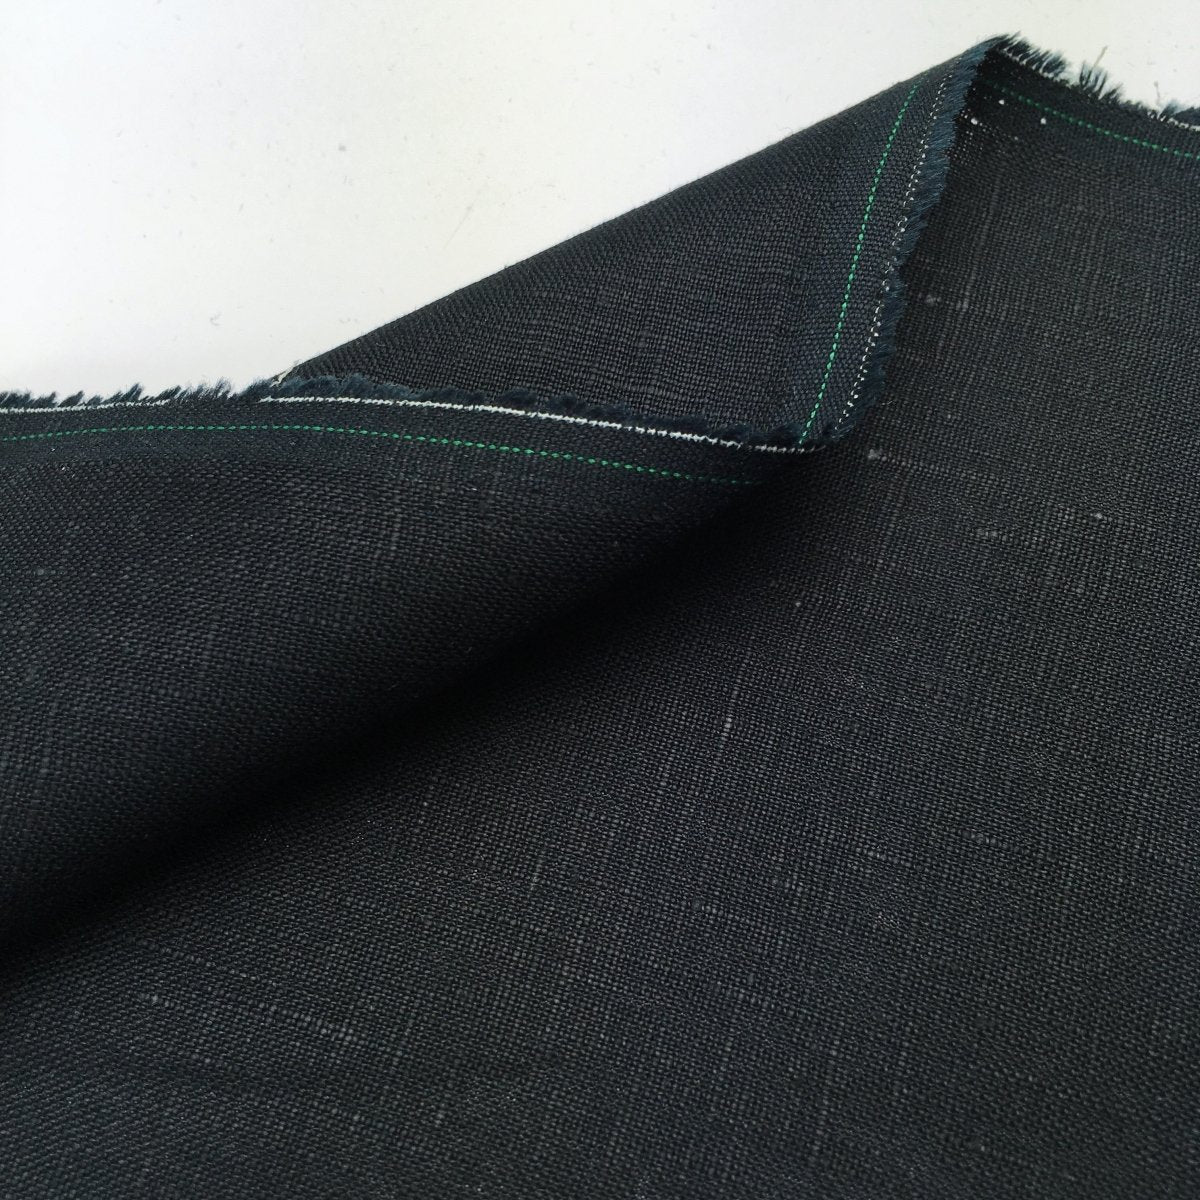 Newport - 100% Linen - Black - Sewing Gem